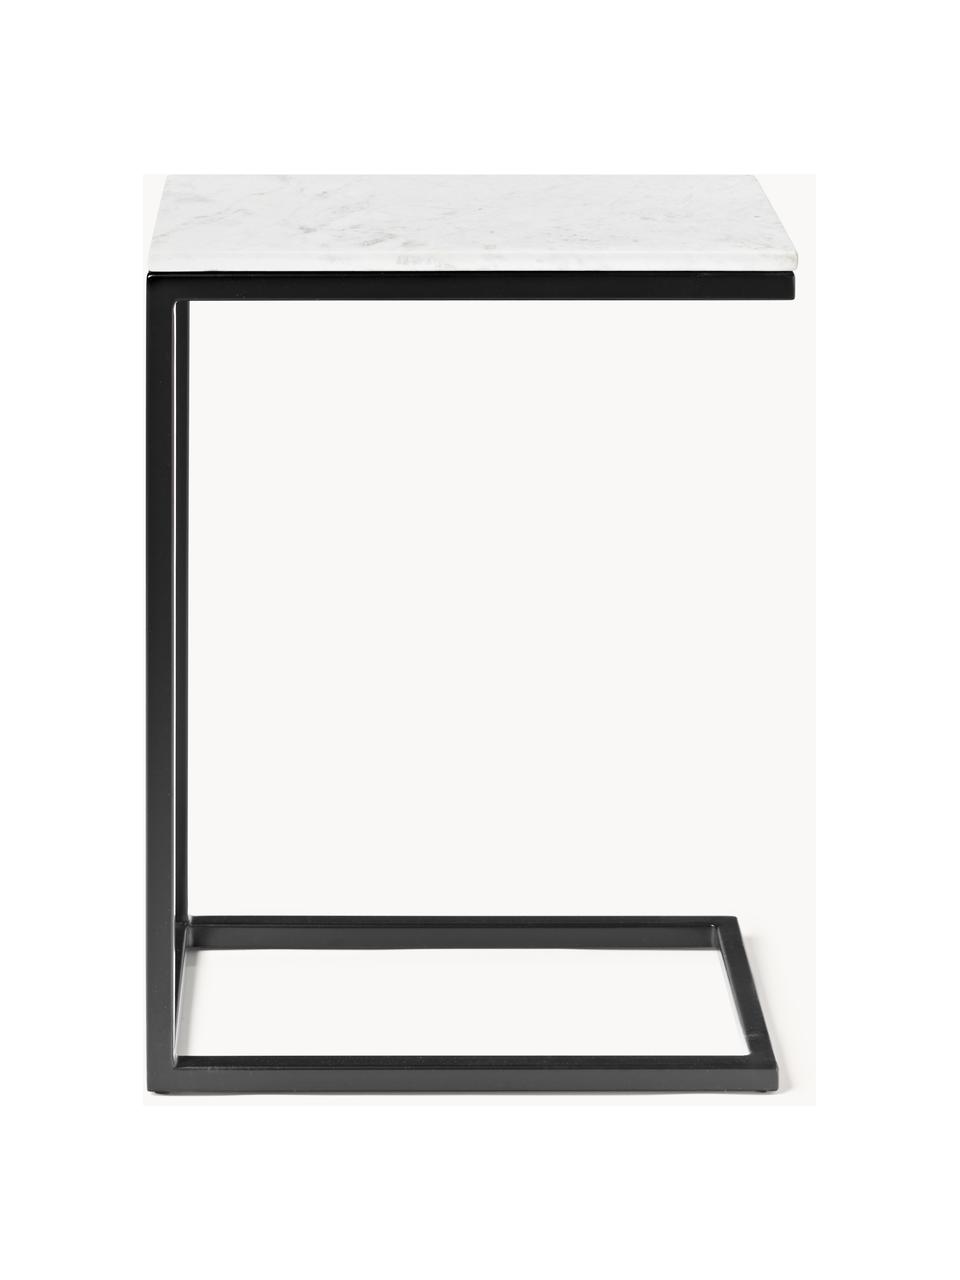 Mramorový pomocný stolík Celow, Mramorová biela, Š 45 x V 62 cm